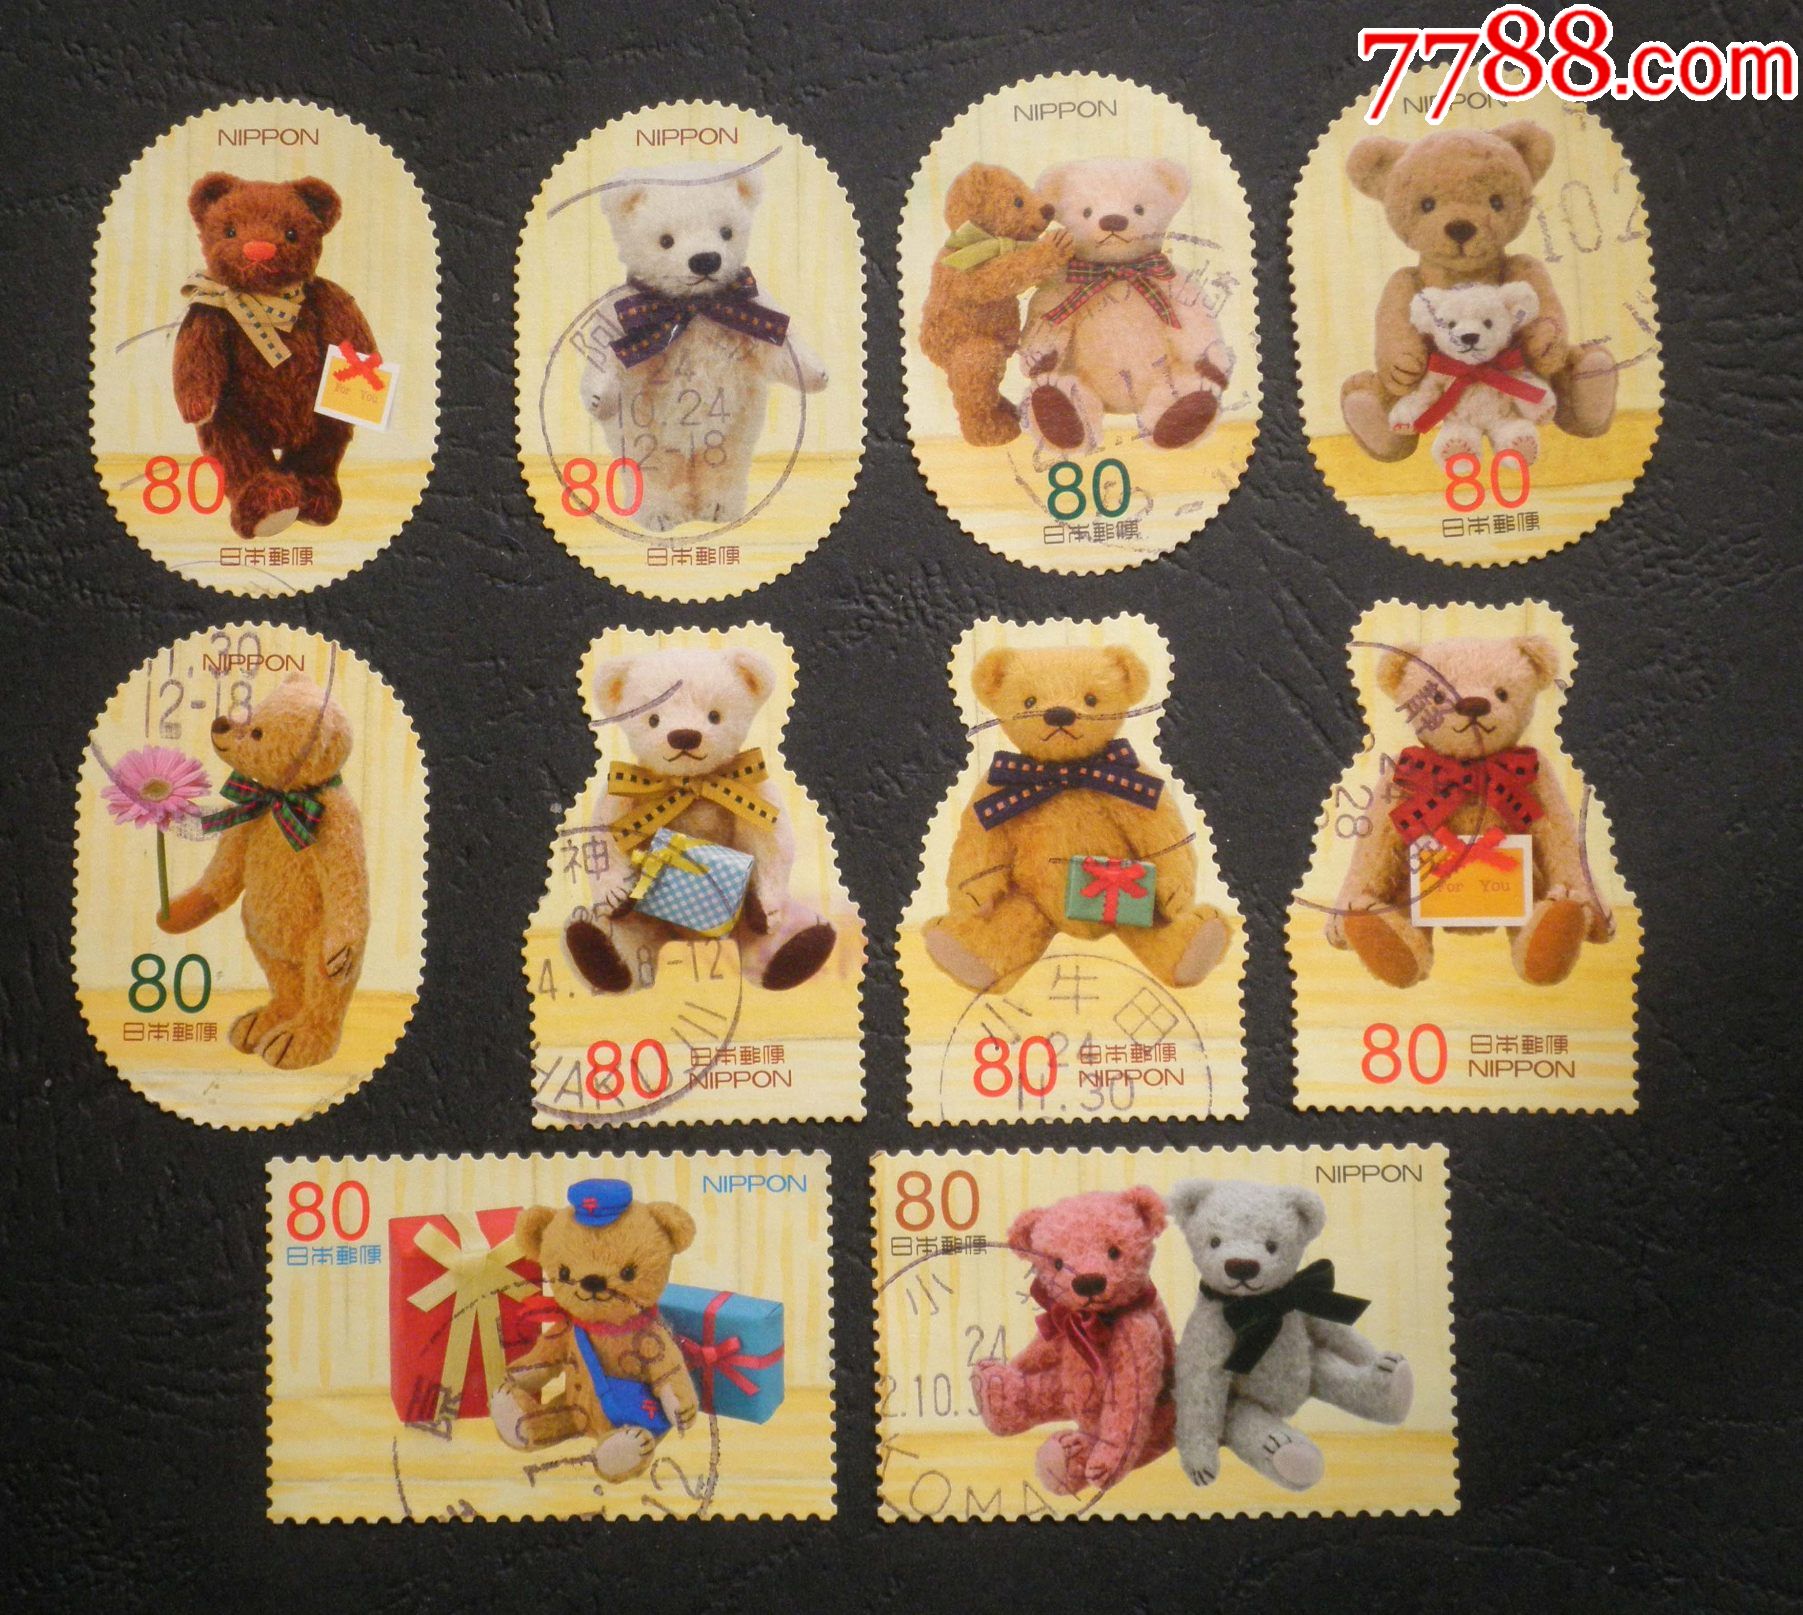 日本信销邮票2012年卡通邮票泰迪熊异形邮票10全g62